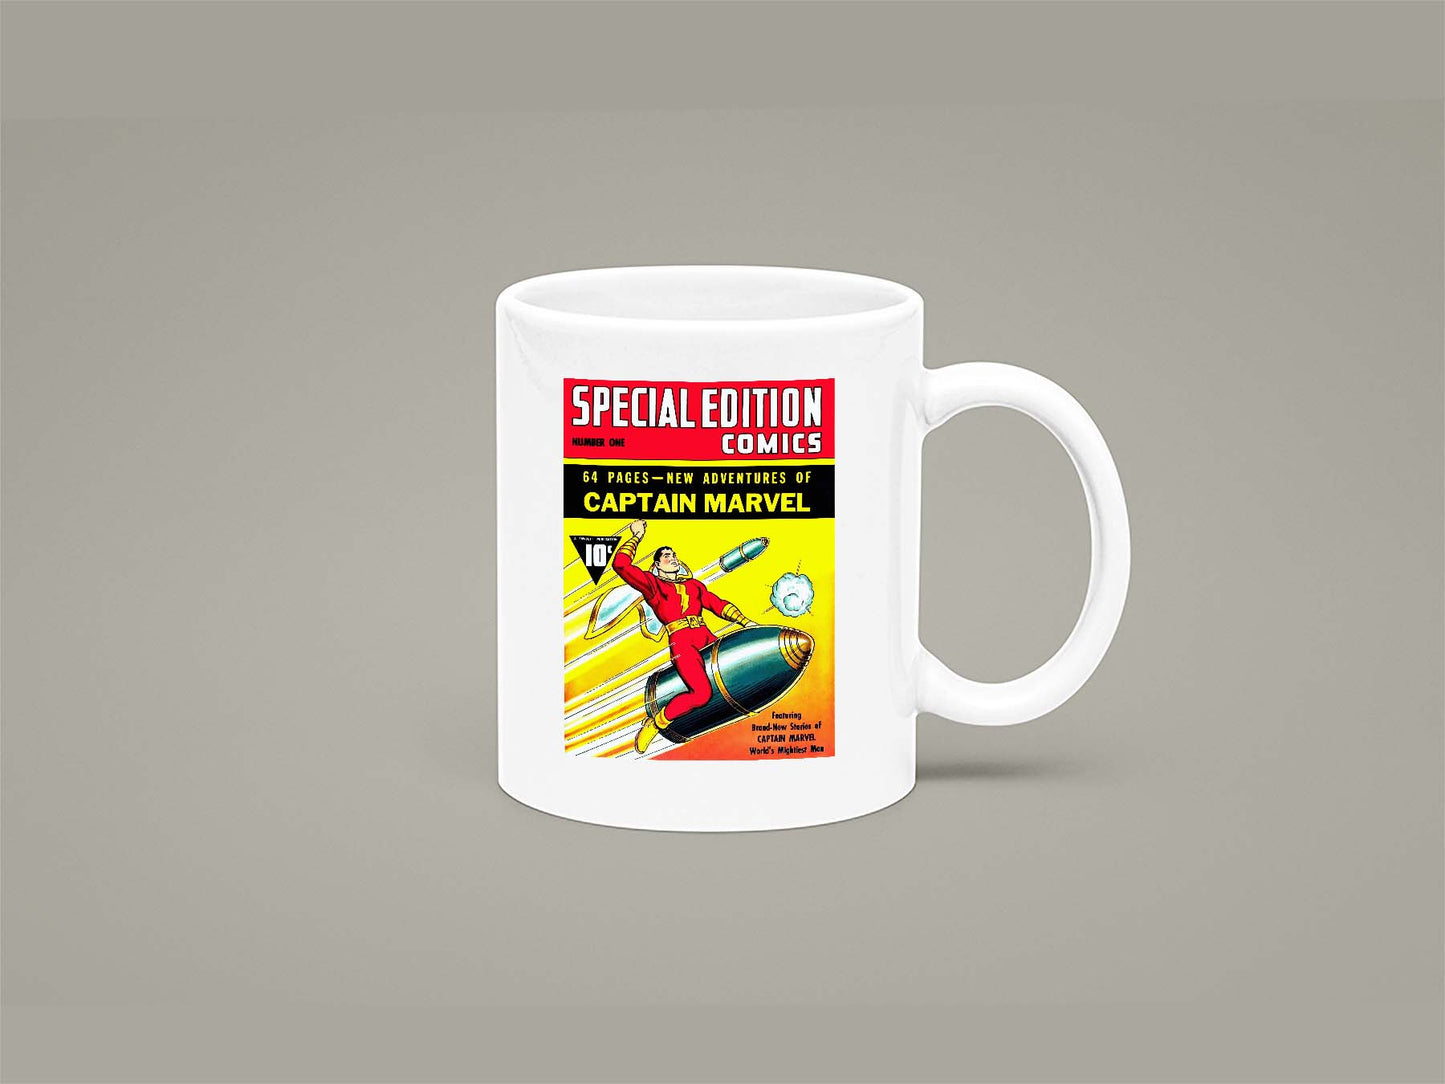 Special Edition Comics No1 Mug 11oz 